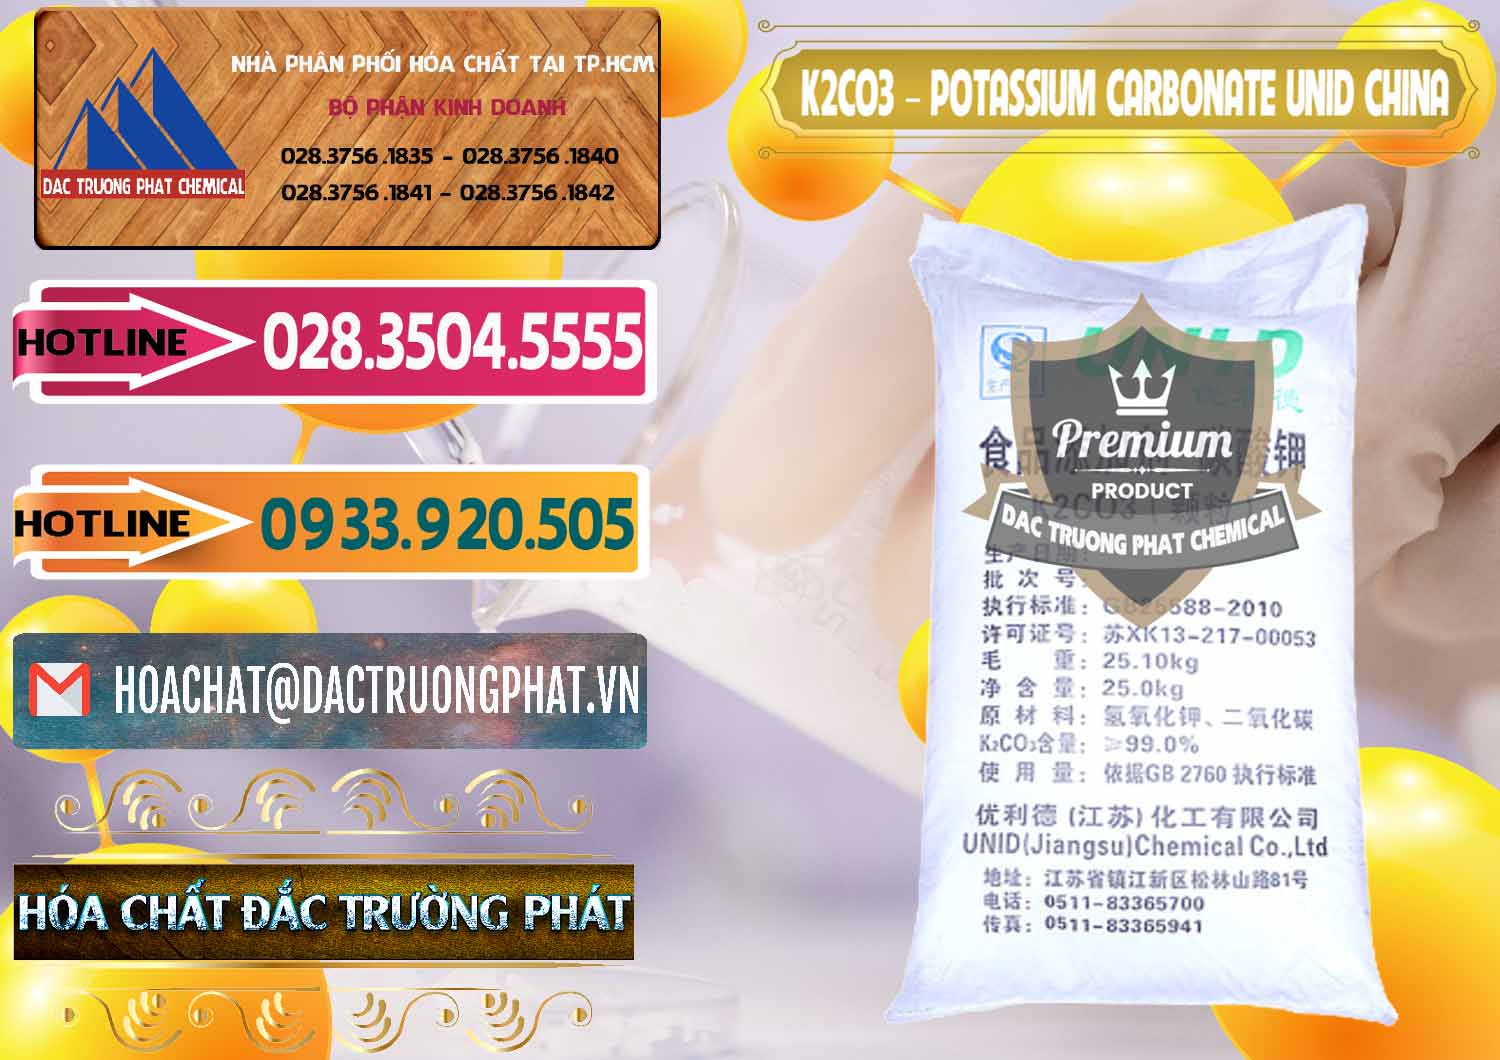 Công ty bán _ cung cấp K2Co3 – Potassium Carbonate UNID Trung Quốc China - 0475 - Chuyên bán _ cung cấp hóa chất tại TP.HCM - dactruongphat.vn